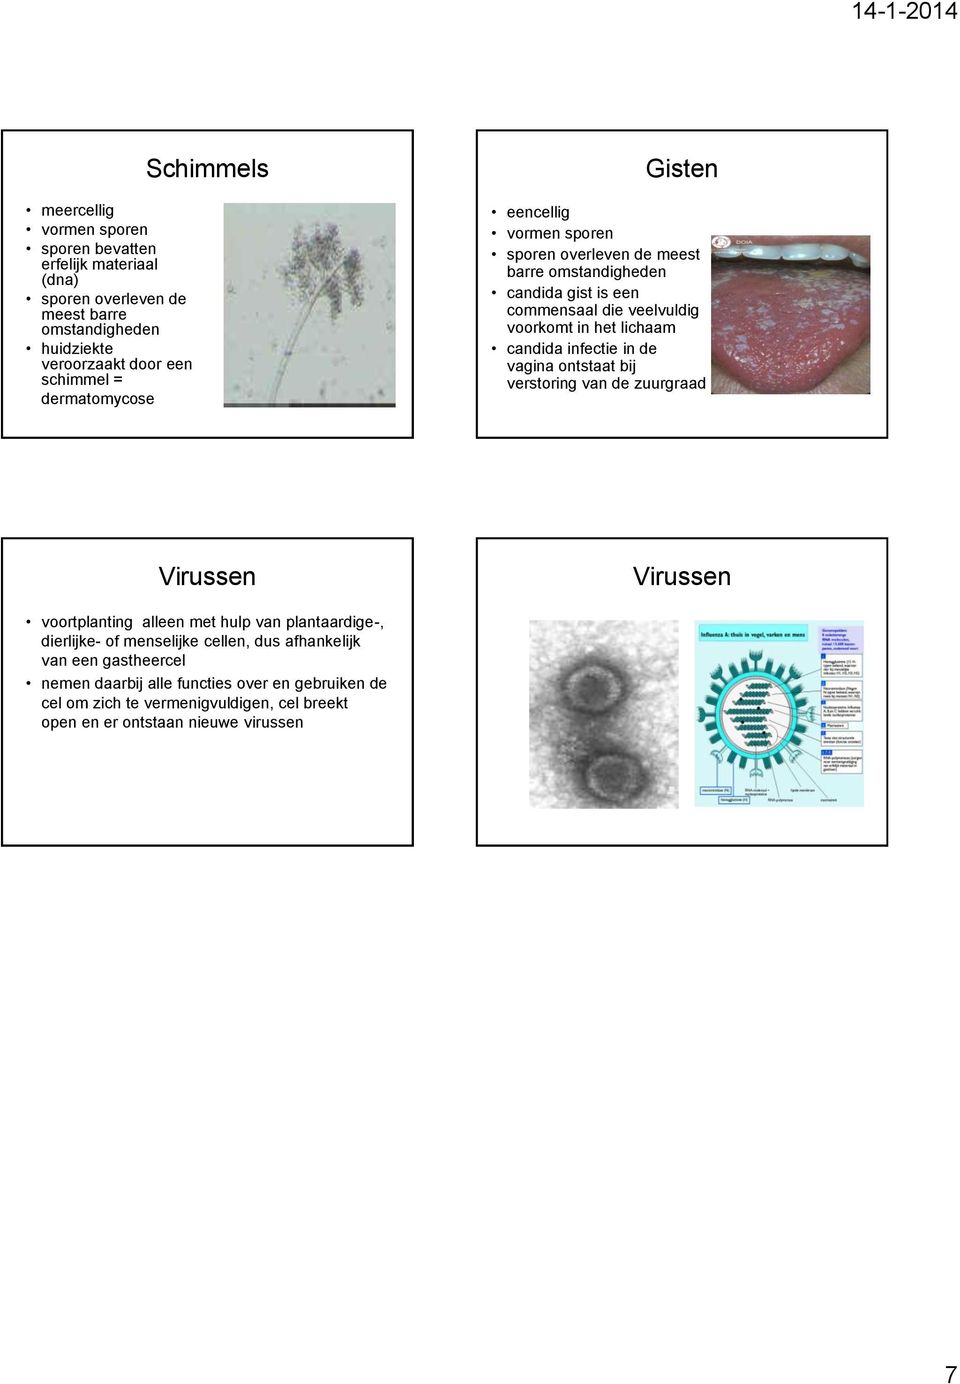 lichaam candida infectie in de vagina ontstaat bij verstoring van de zuurgraad Virussen voortplanting alleen met hulp van plantaardige-, dierlijke- of menselijke